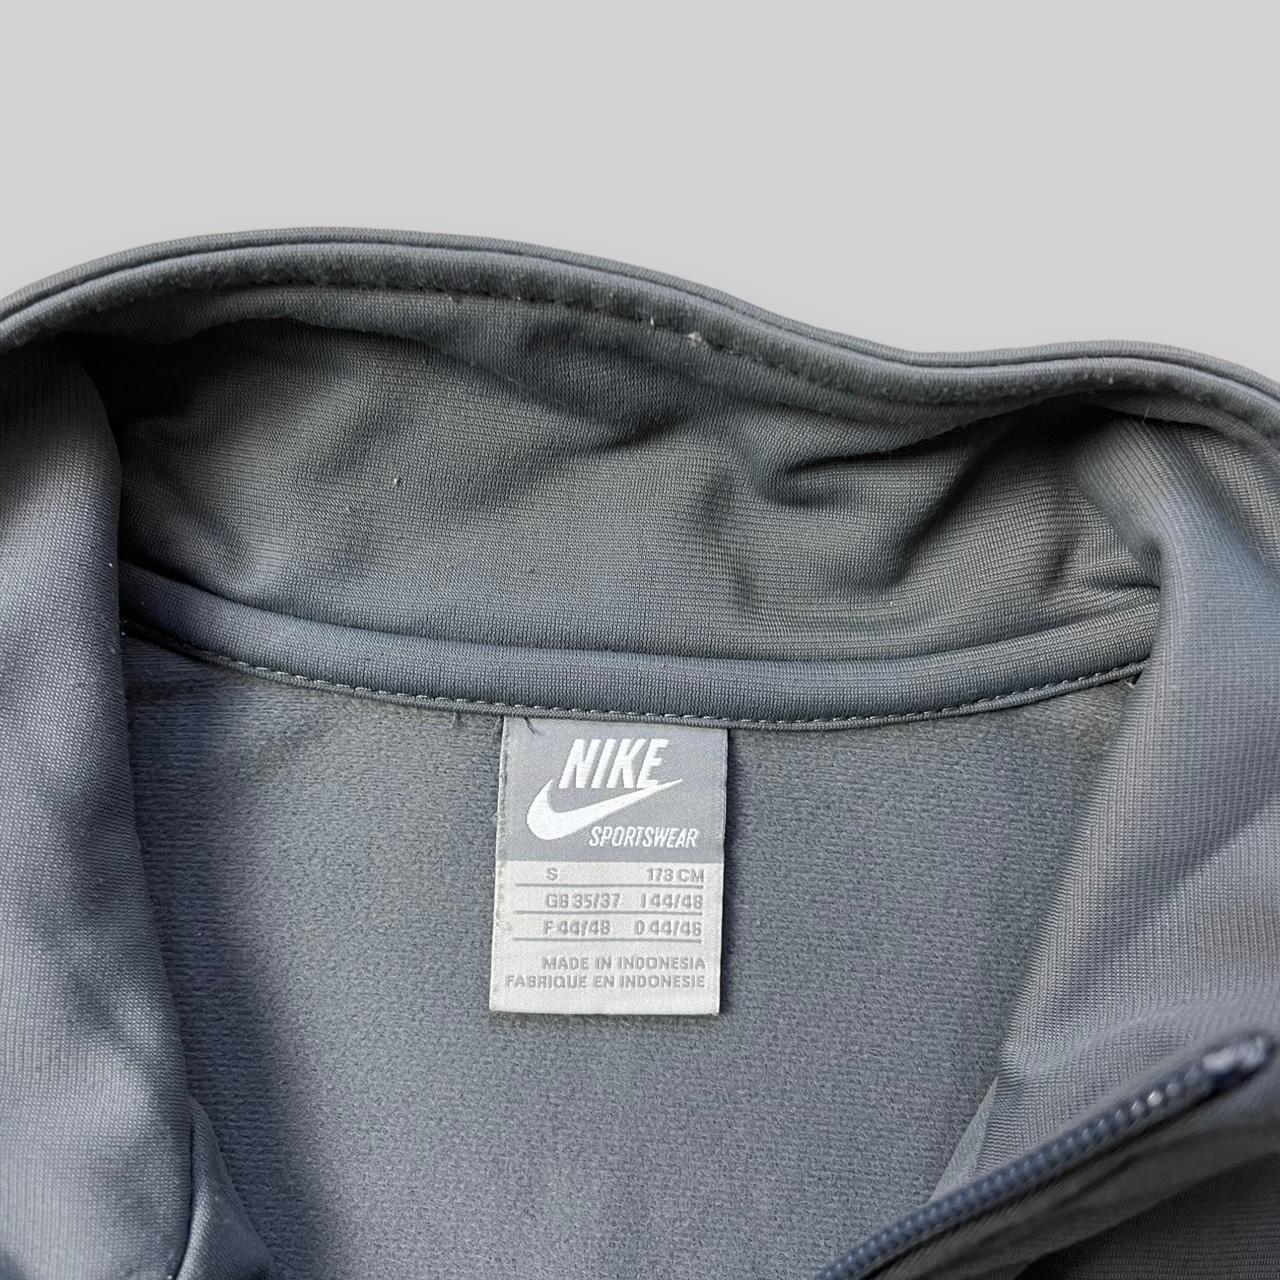 Vintage Nike Club Zip Up Jacket (Small)